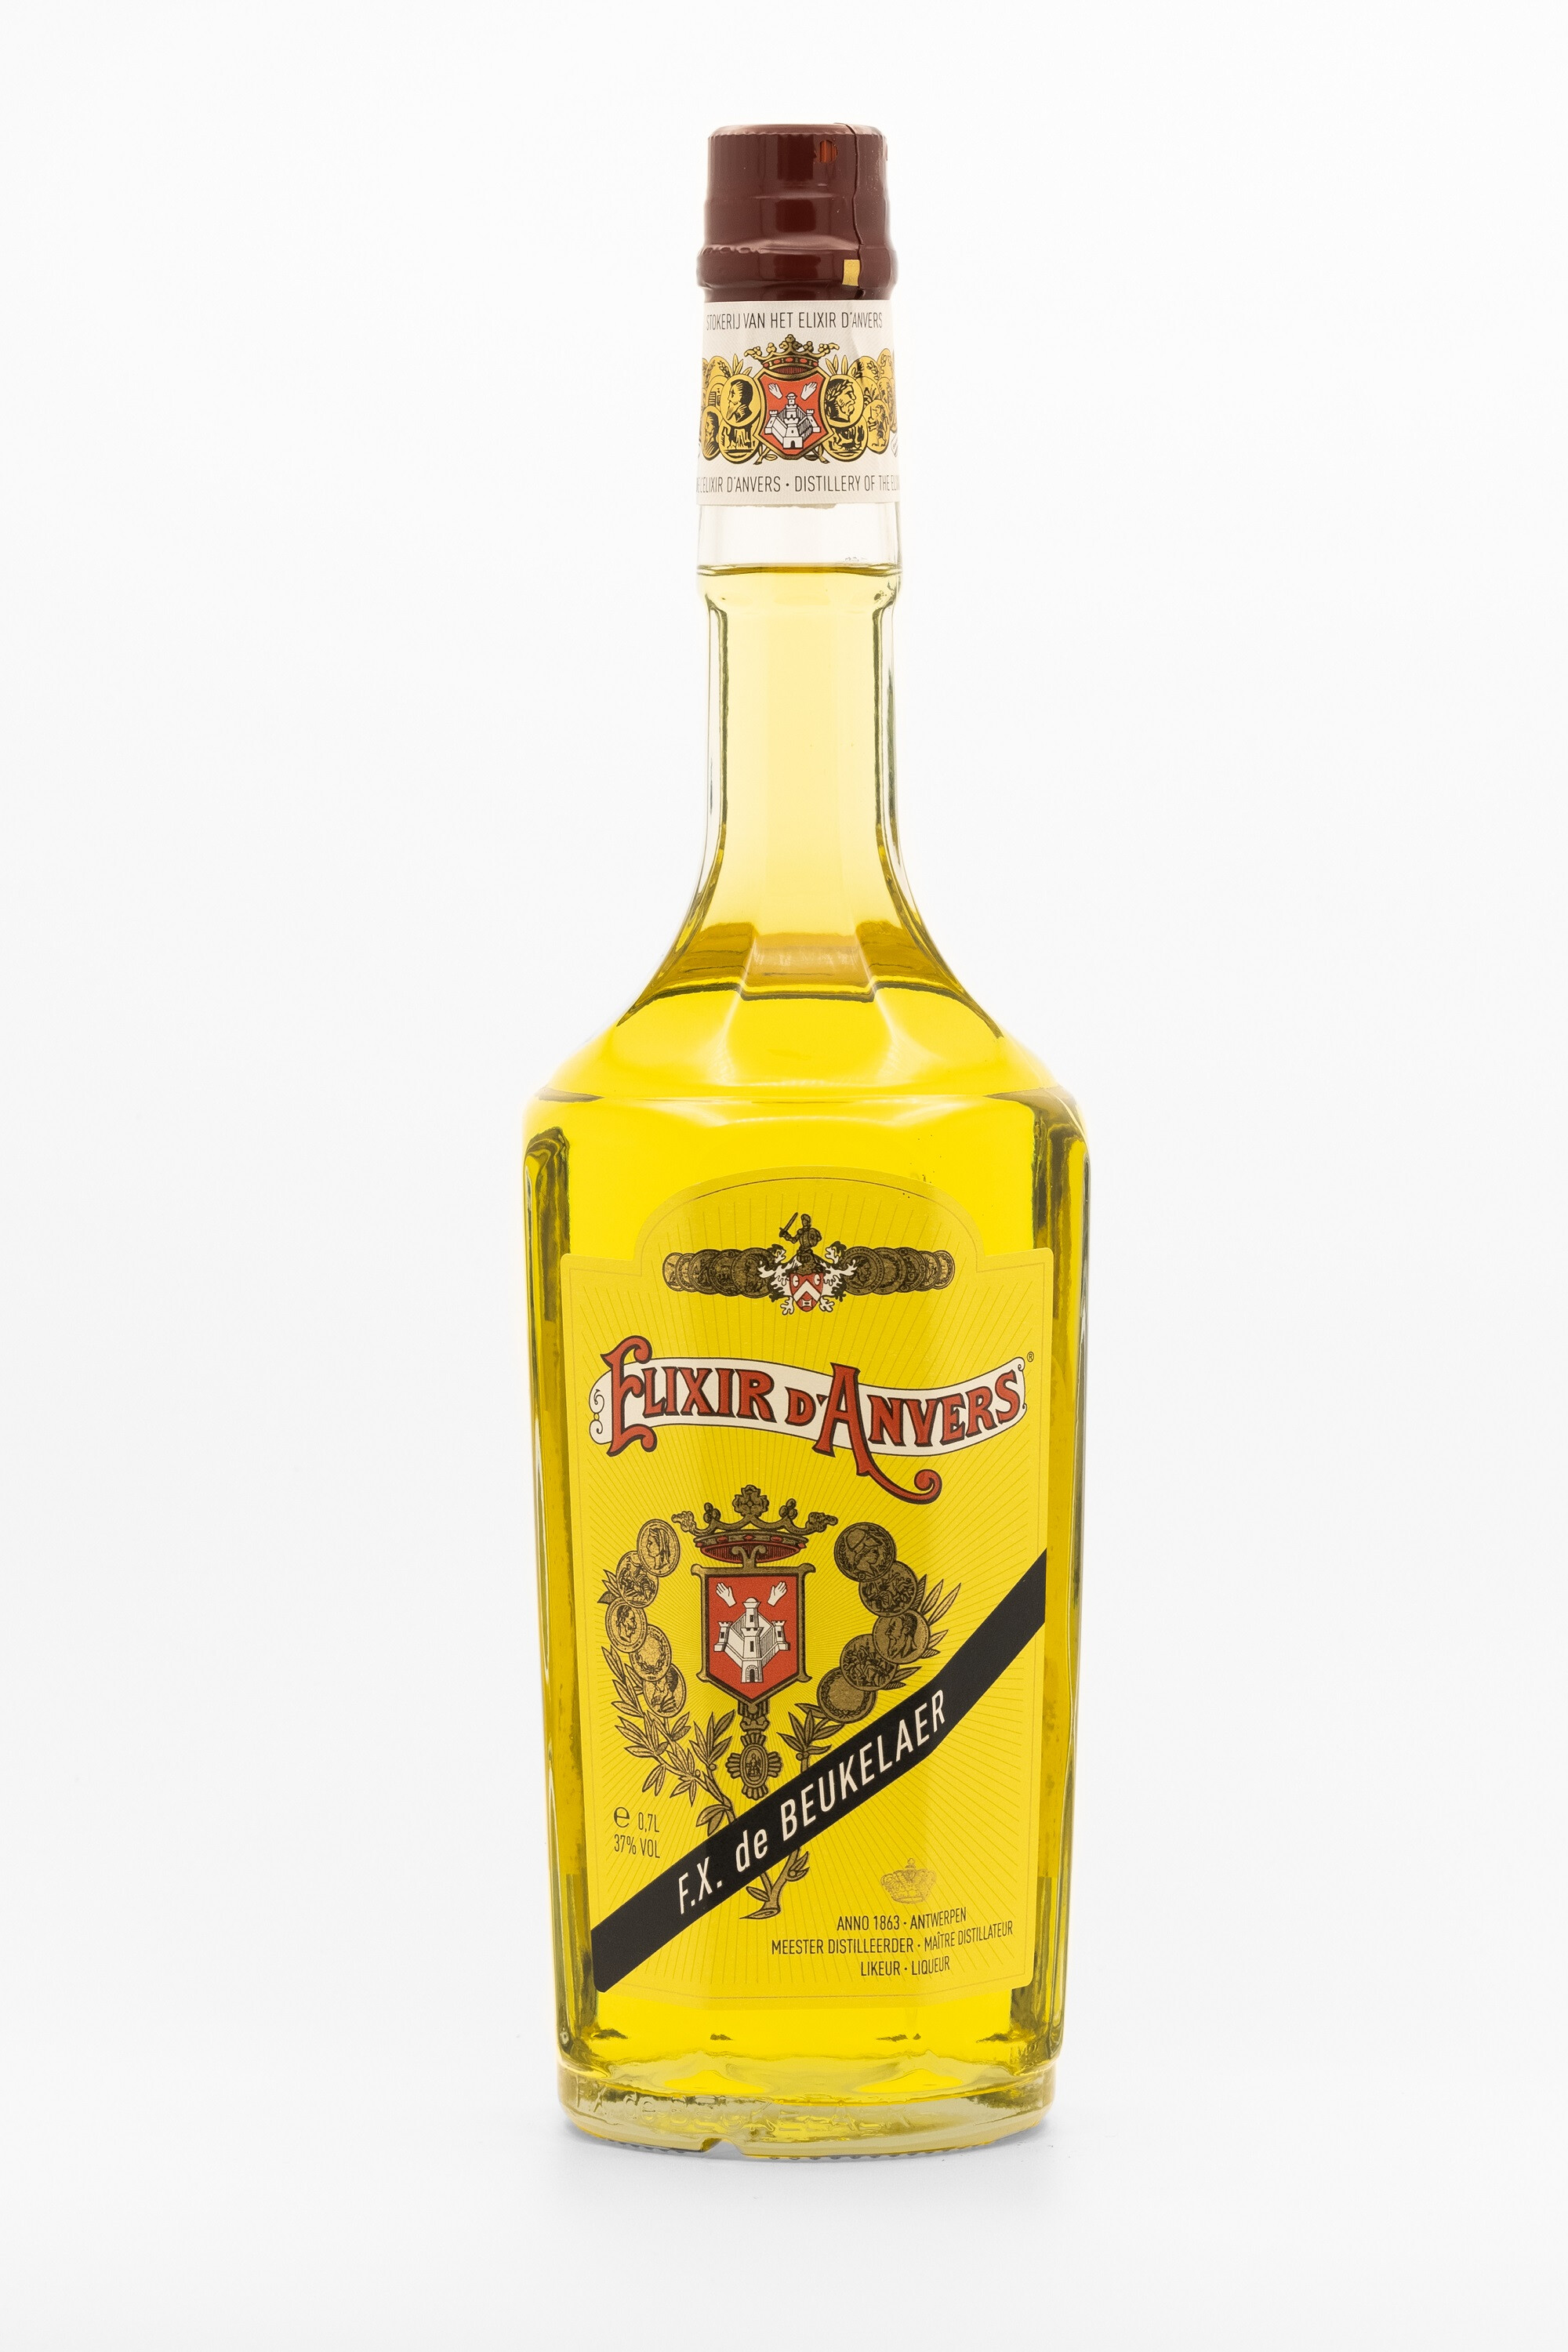 Elixir d'Anvers 70cl 37% Likeur FX de Beukelaer